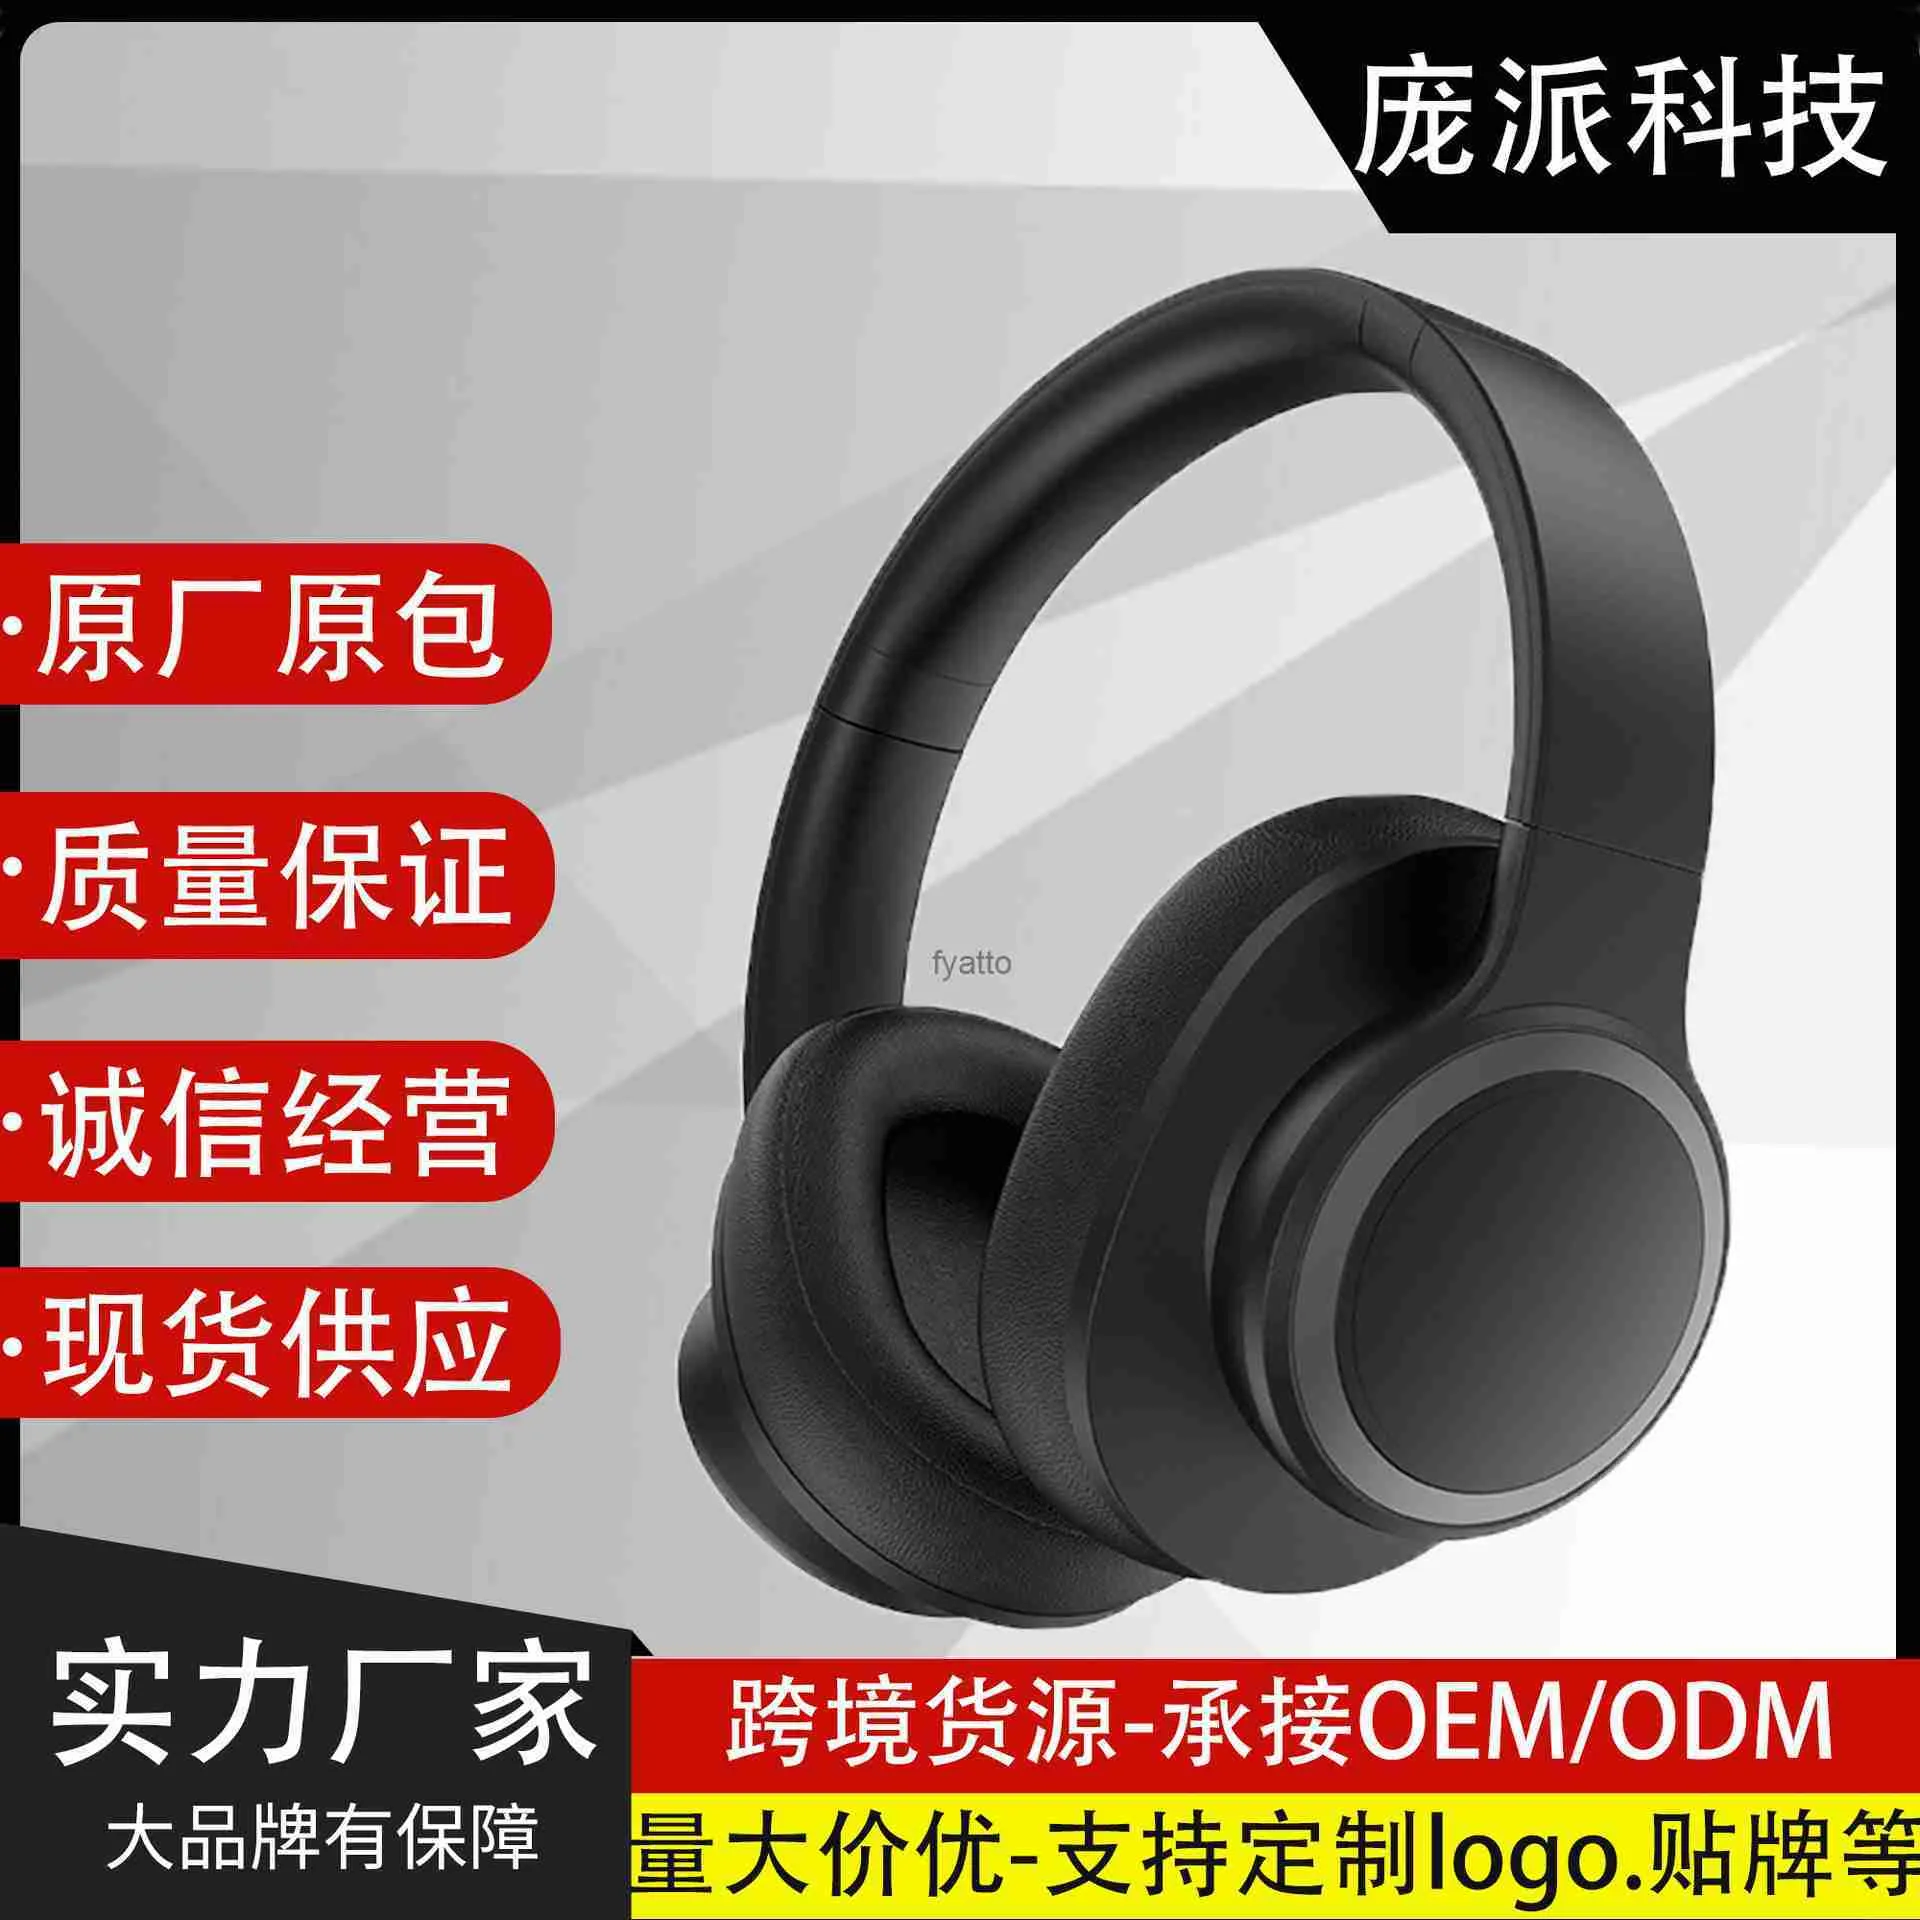 Fones de ouvido fones de ouvido anc redução de ruído ativo sem fio bluetooth 5.3 chip blackable tecnologia earmuffs h240326